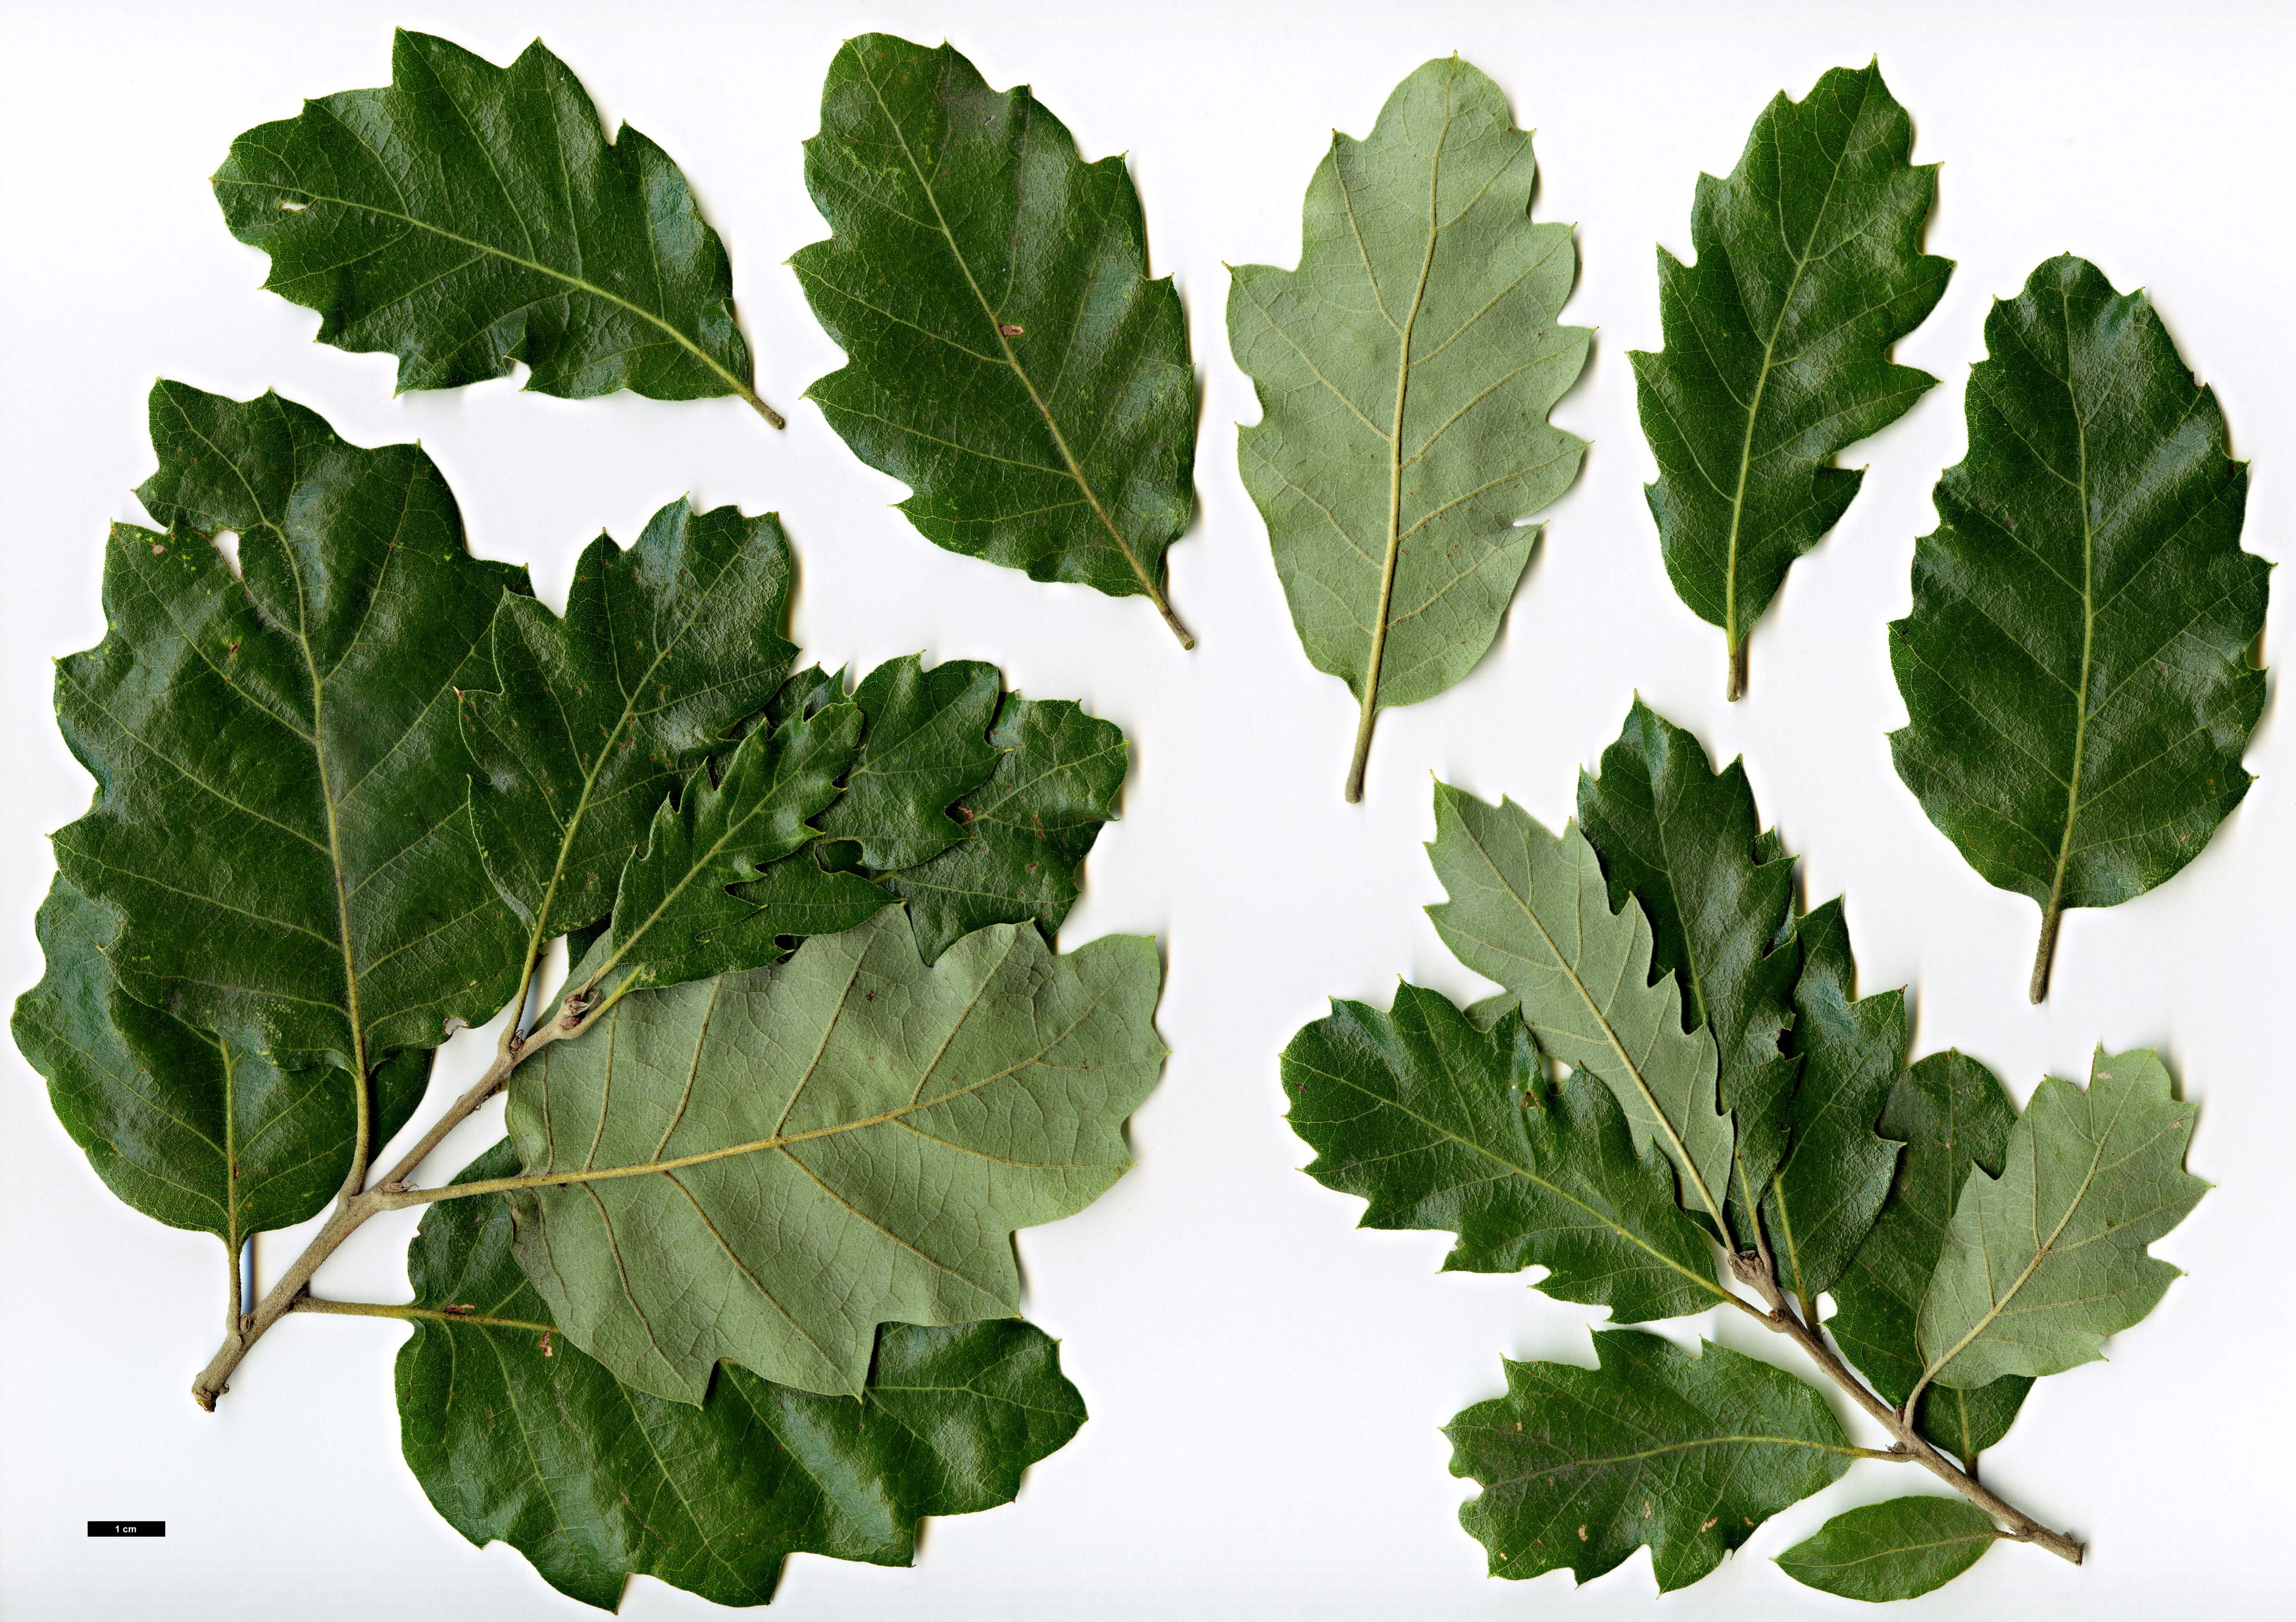 High resolution image: Family: Fagaceae - Genus: Quercus - Taxon: ×crenata - SpeciesSub: 'Ambrozyana' (Q.cerris × Q.suber)